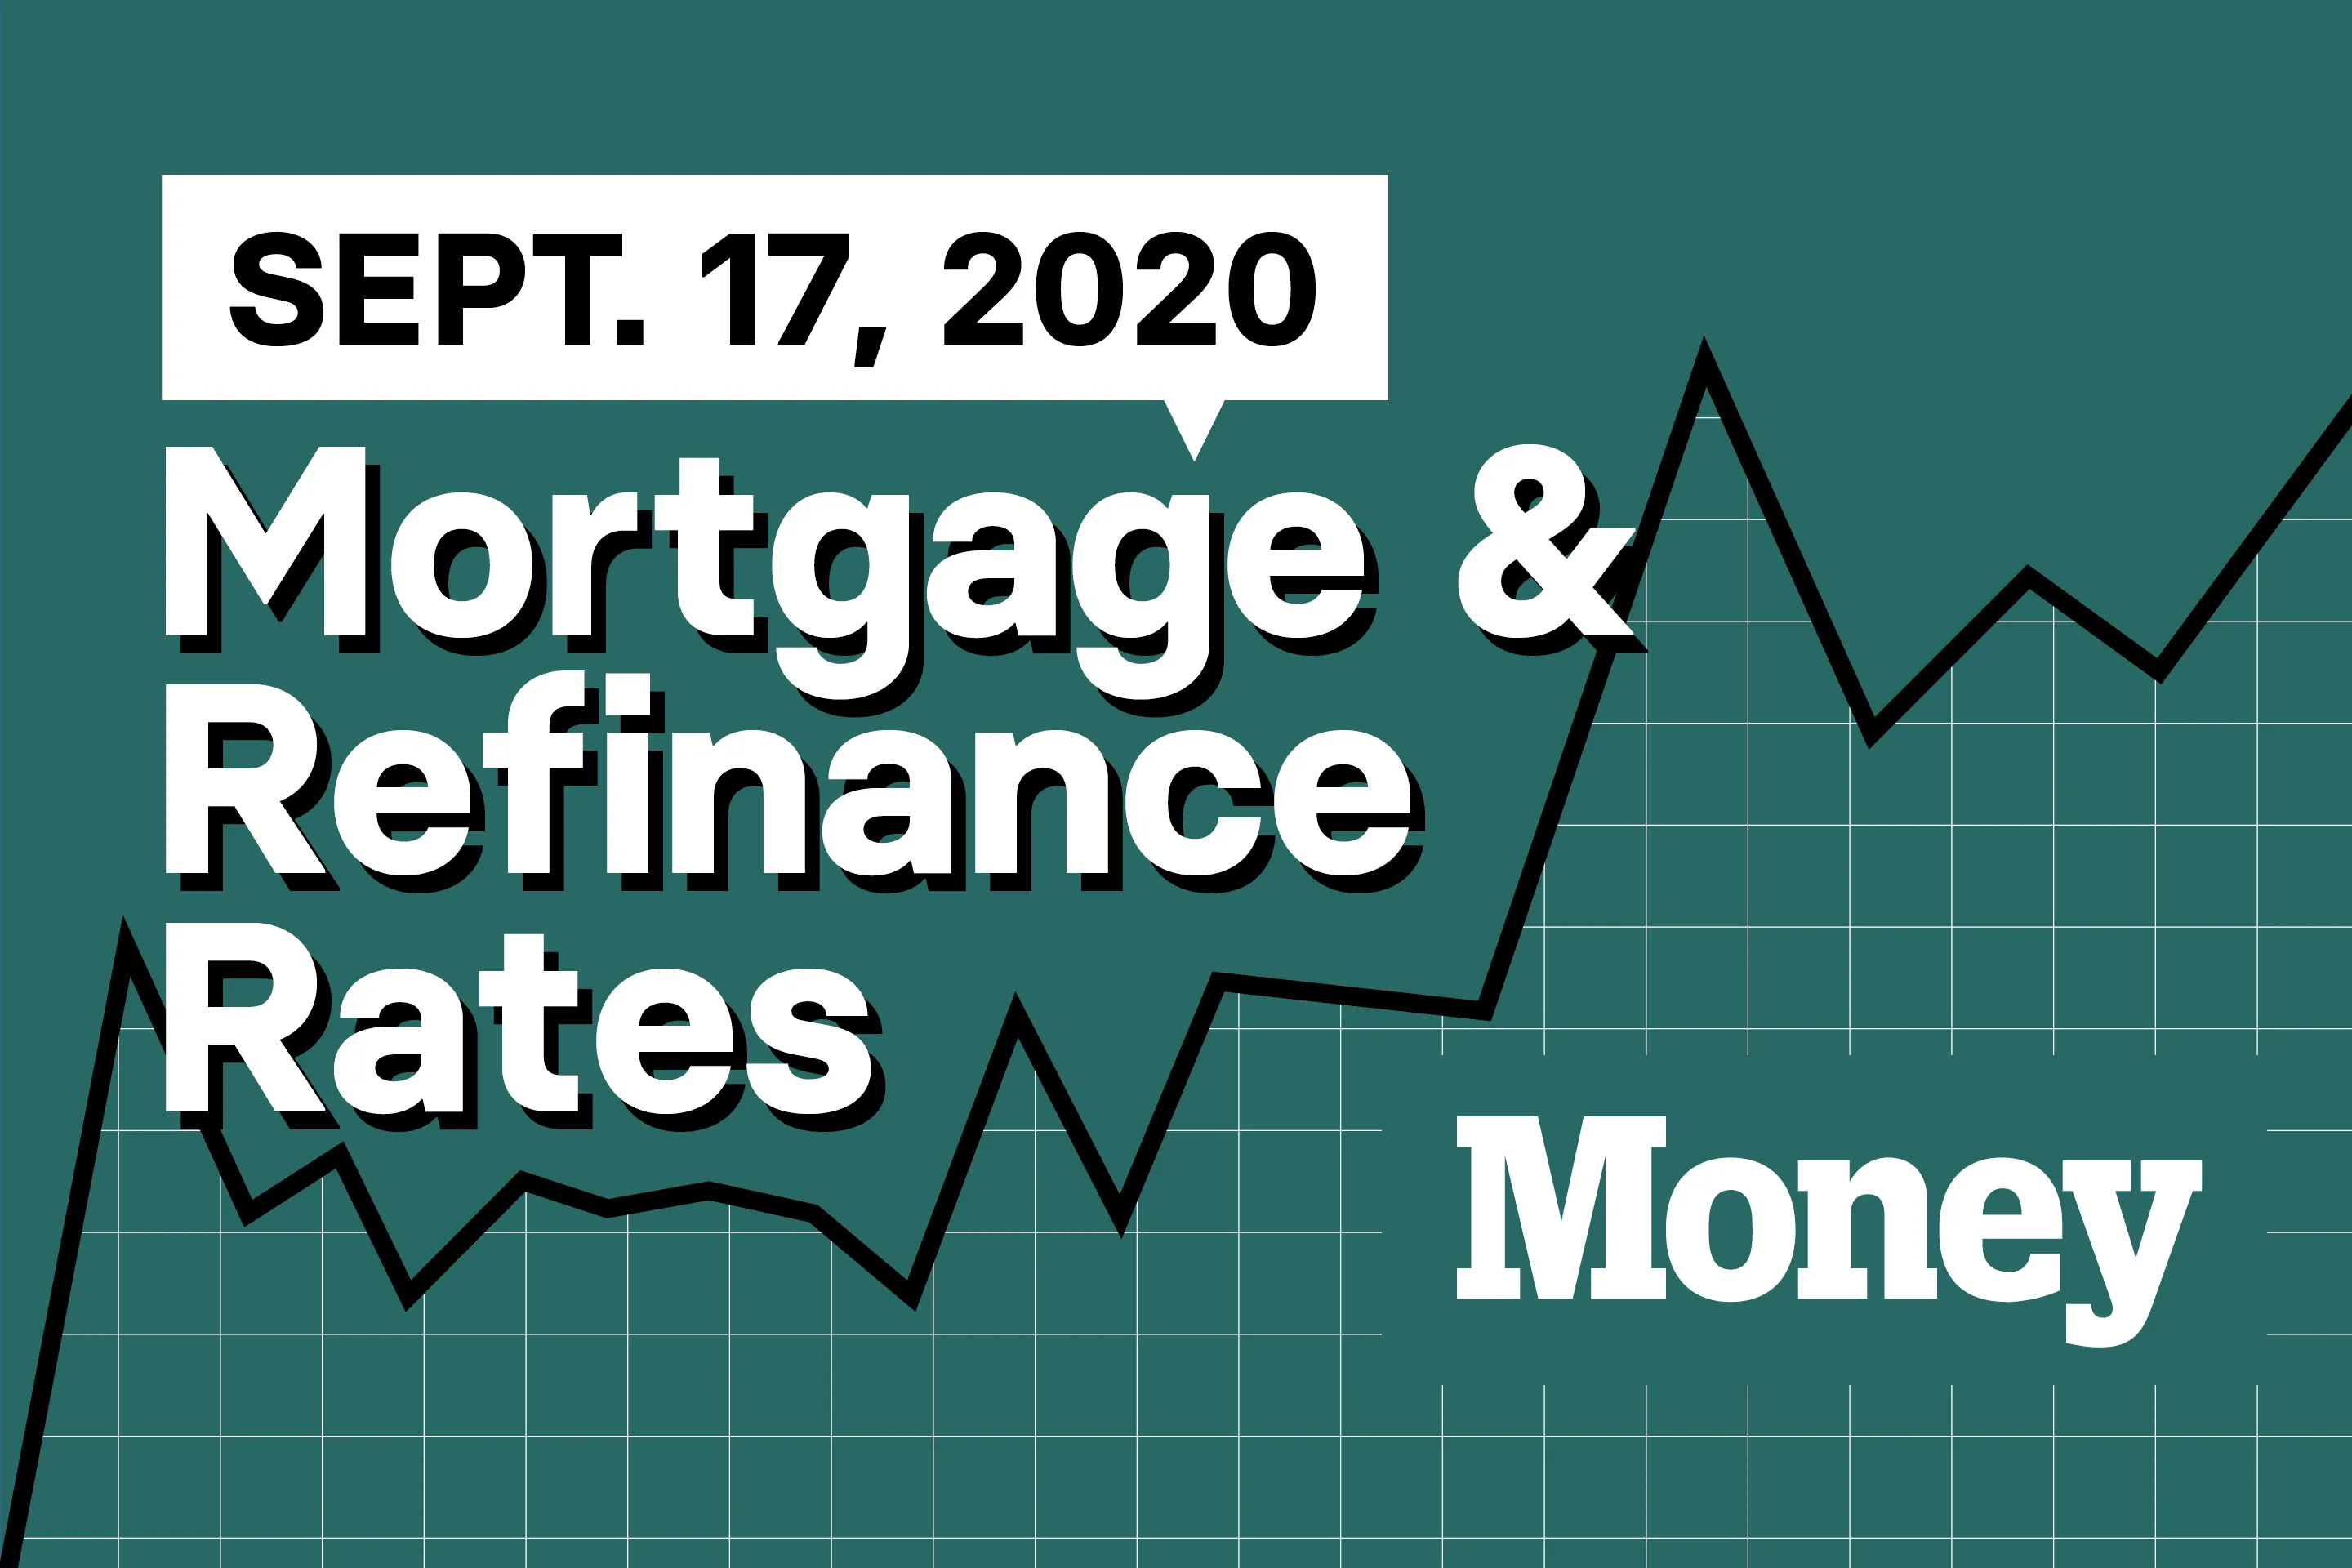 Best Mortgage & Refinance Rates for September 17, 2020 - Money